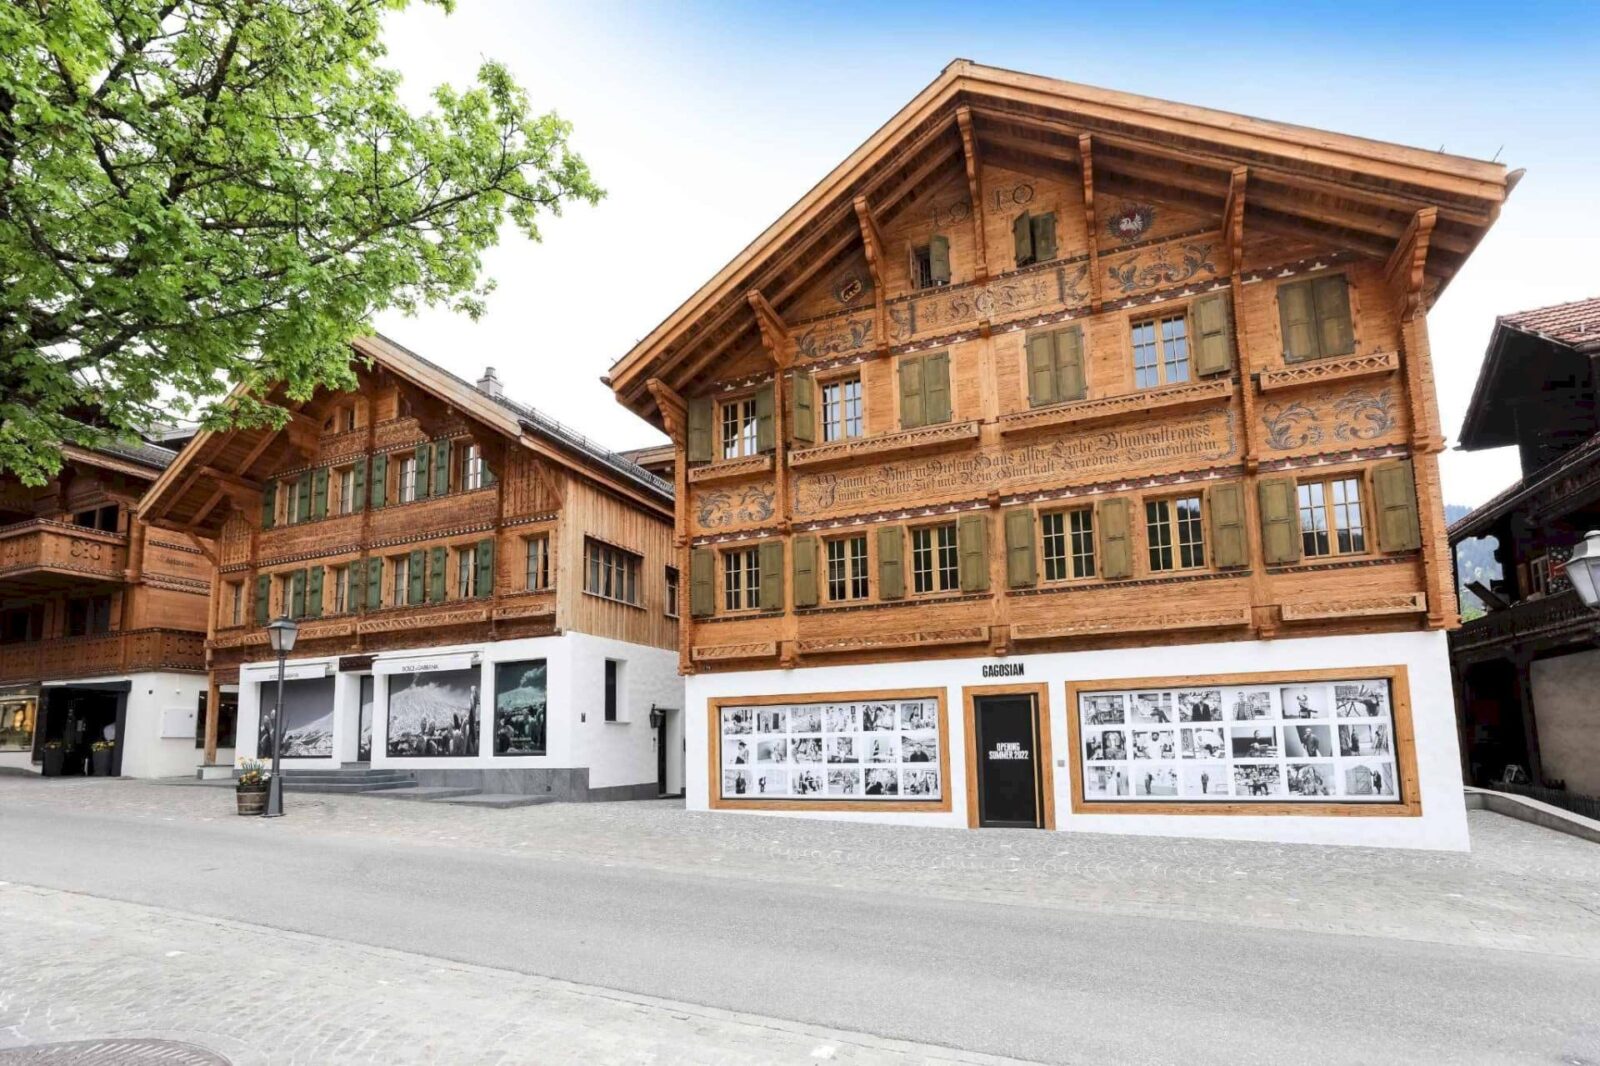 Forbes Global Properties Australia  Exploring Gstaad: Switzerland's…